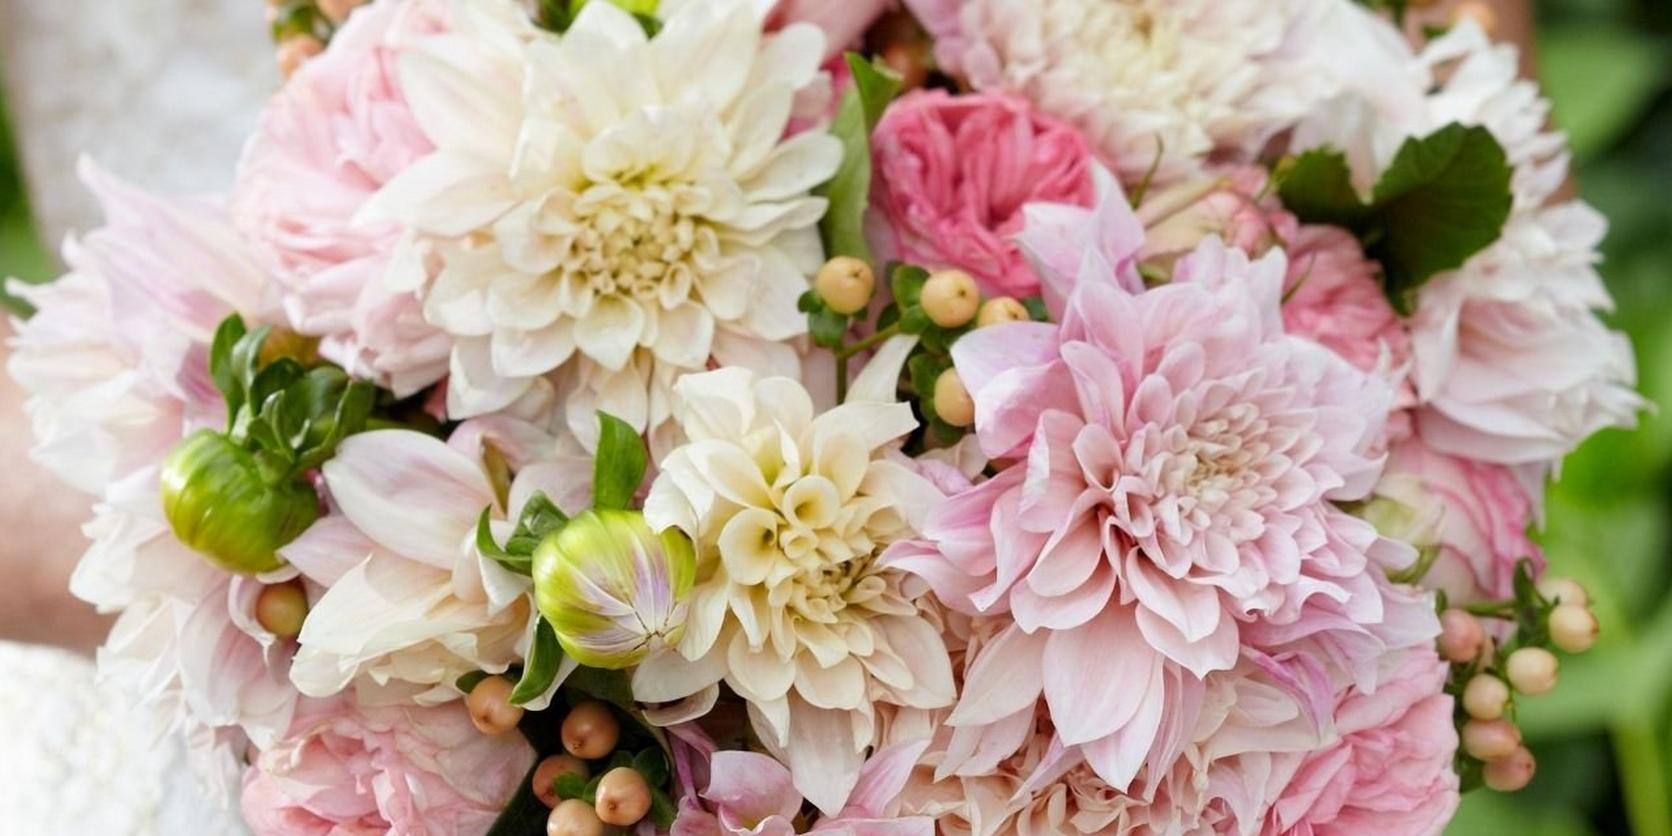 dahlias-wedding-bridal-bouquet-pastels